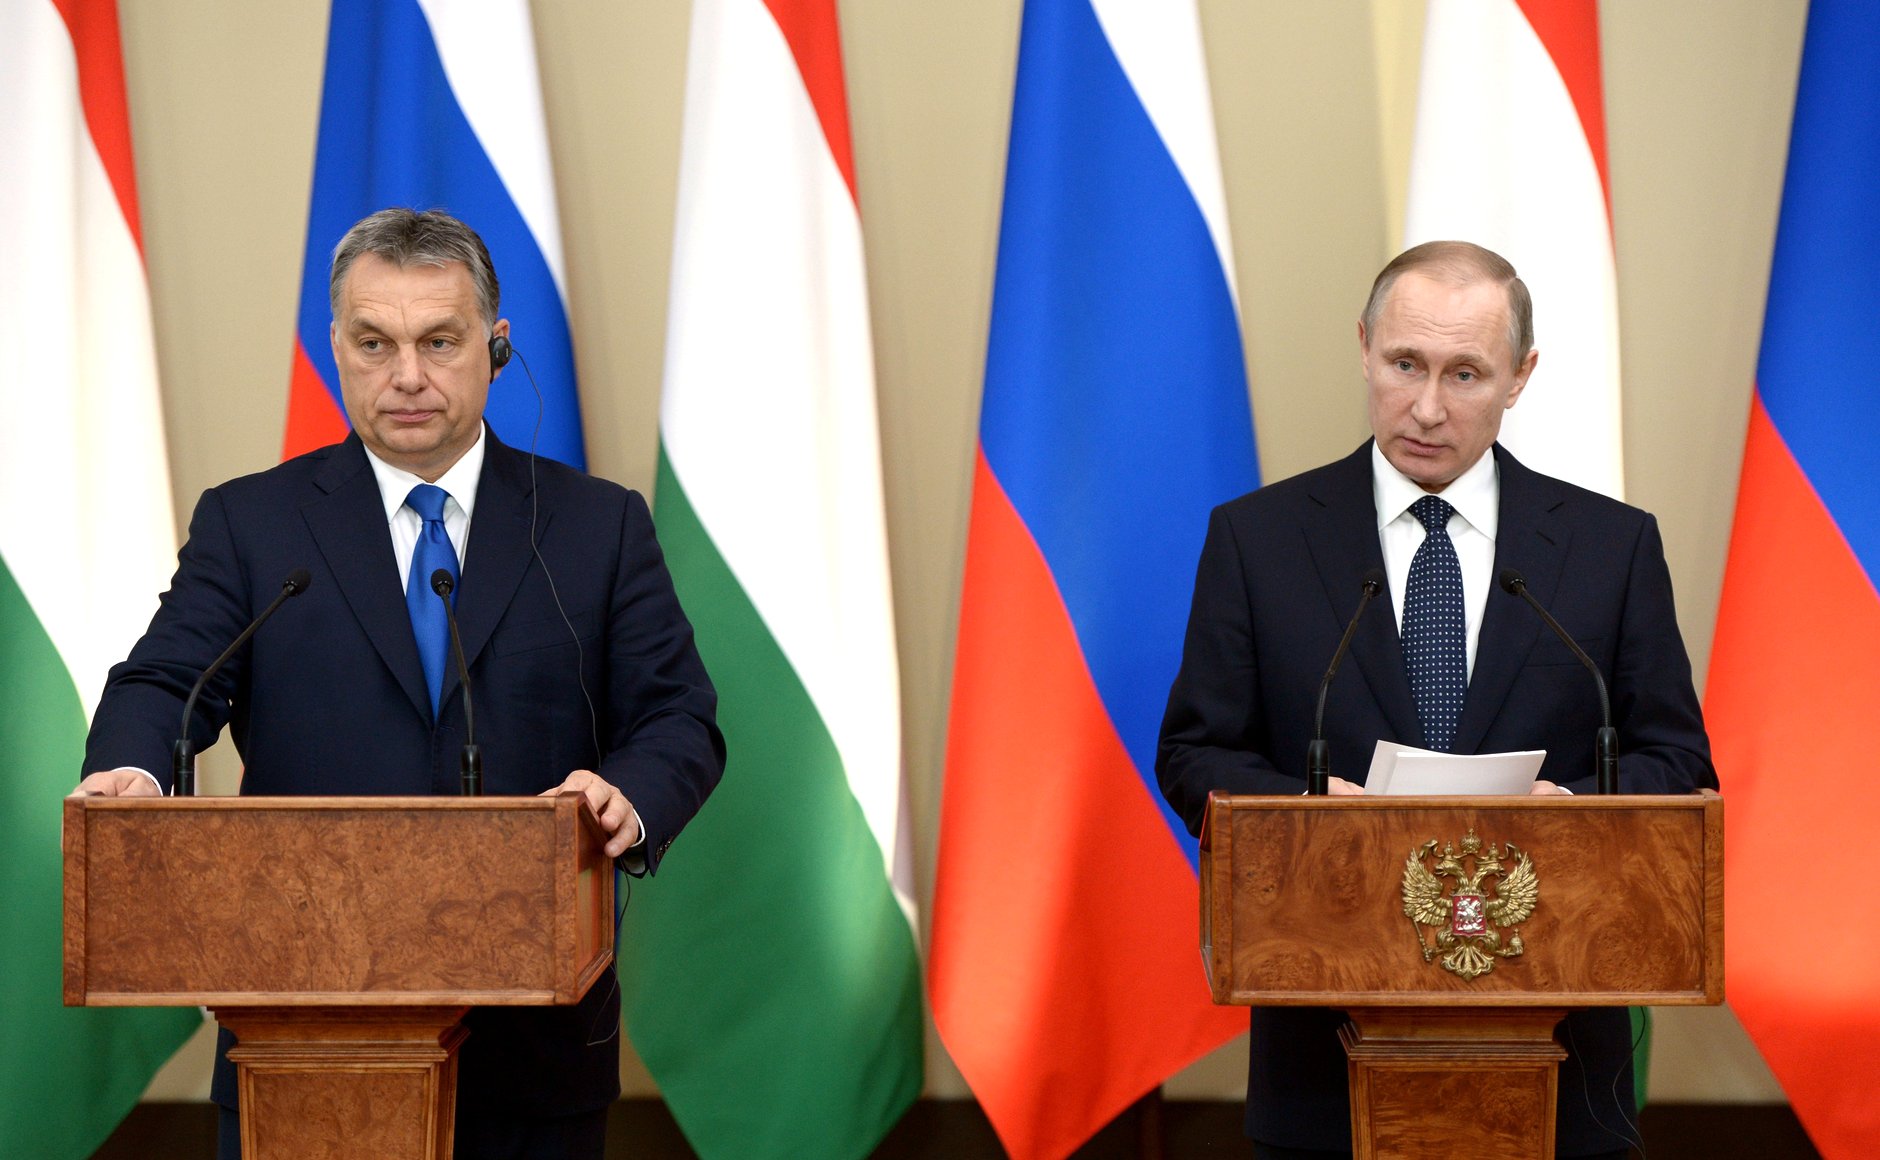 Putin og Orban står ved hver sin talerstol foran en rekke russiske og ungarske flagg